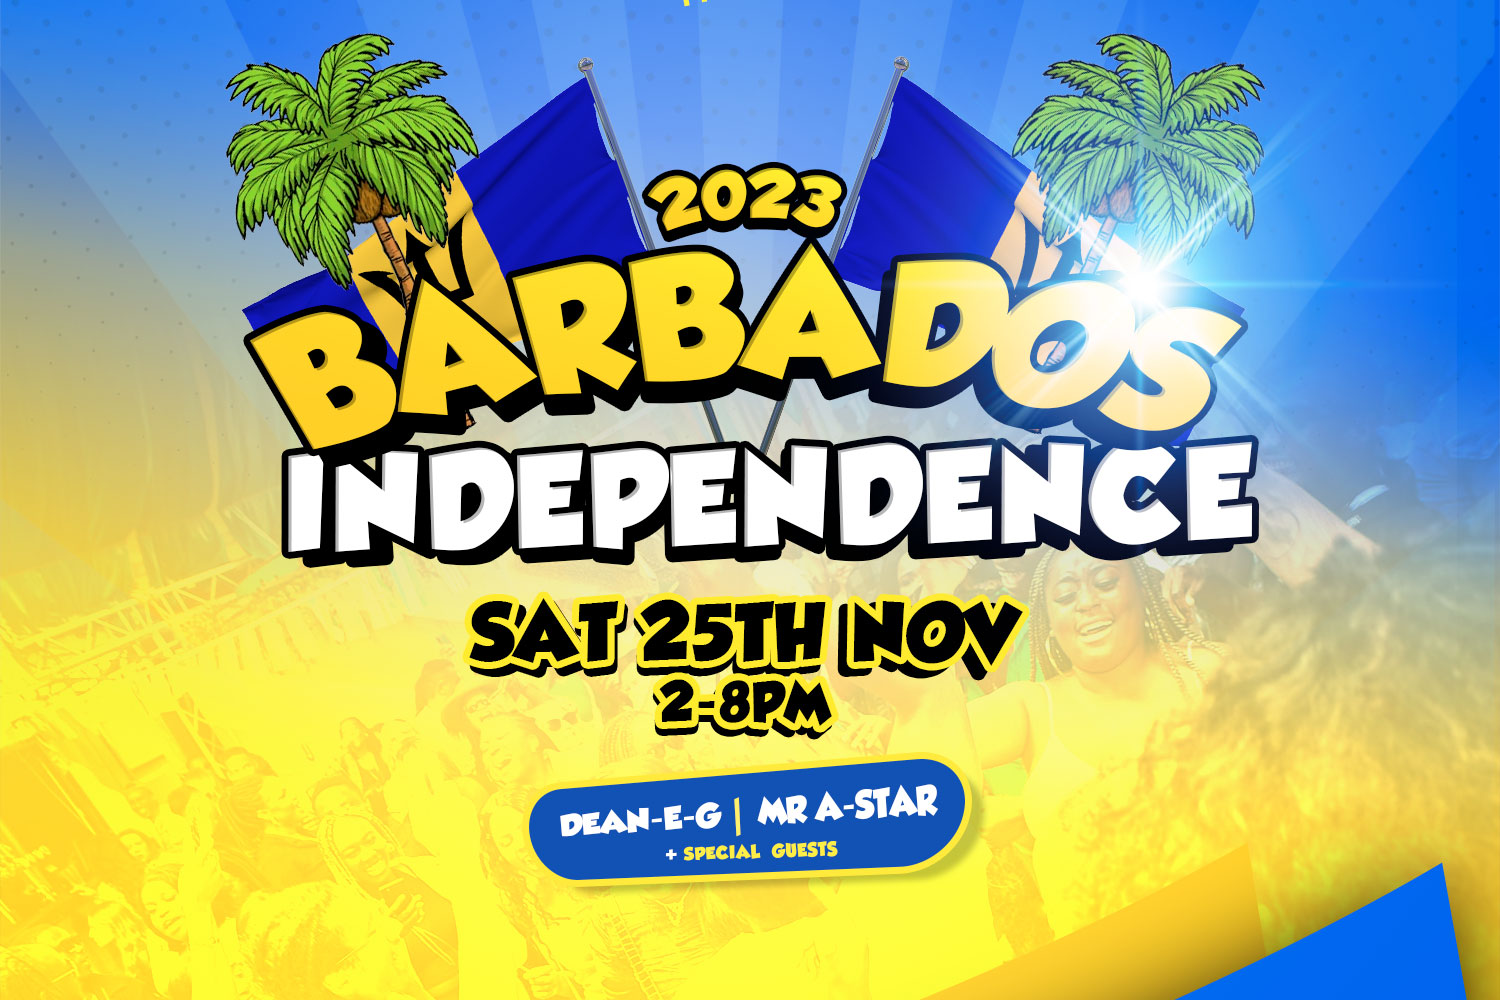 Sat, 25th Nov | BHAM Barbados Ind